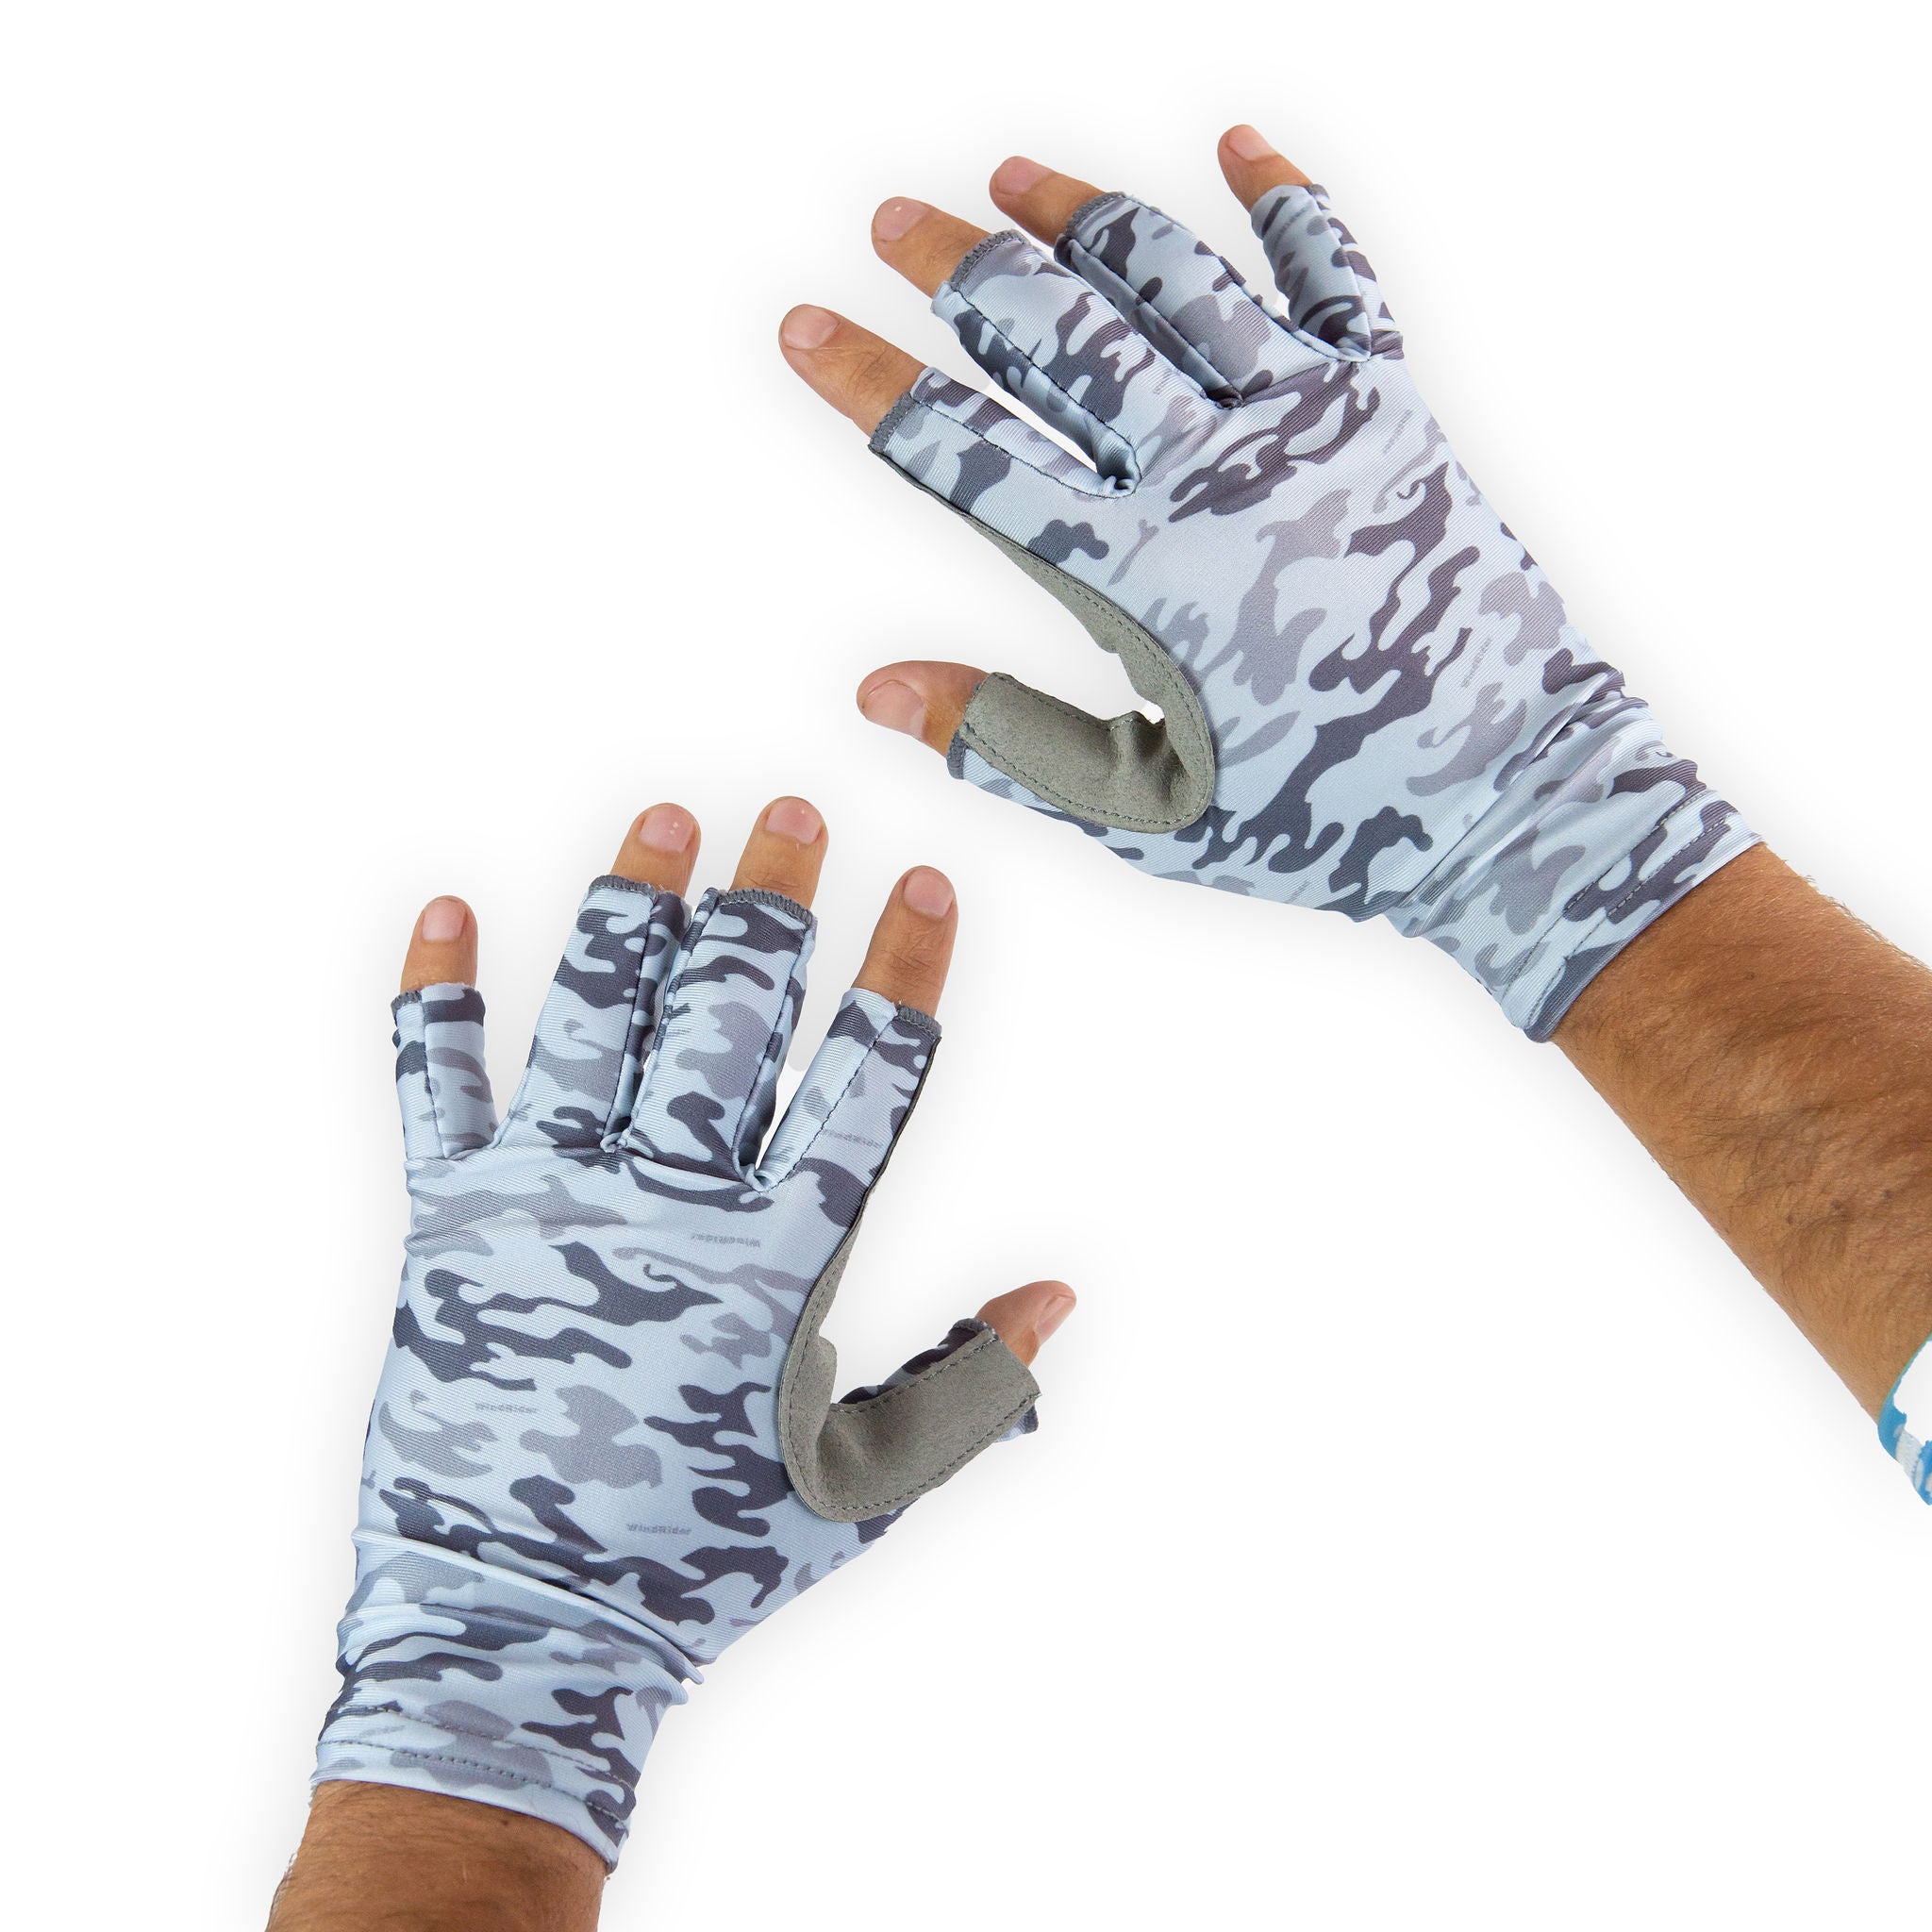 Sun Shield UPF 50+ Gloves - Sun Protection Gloves